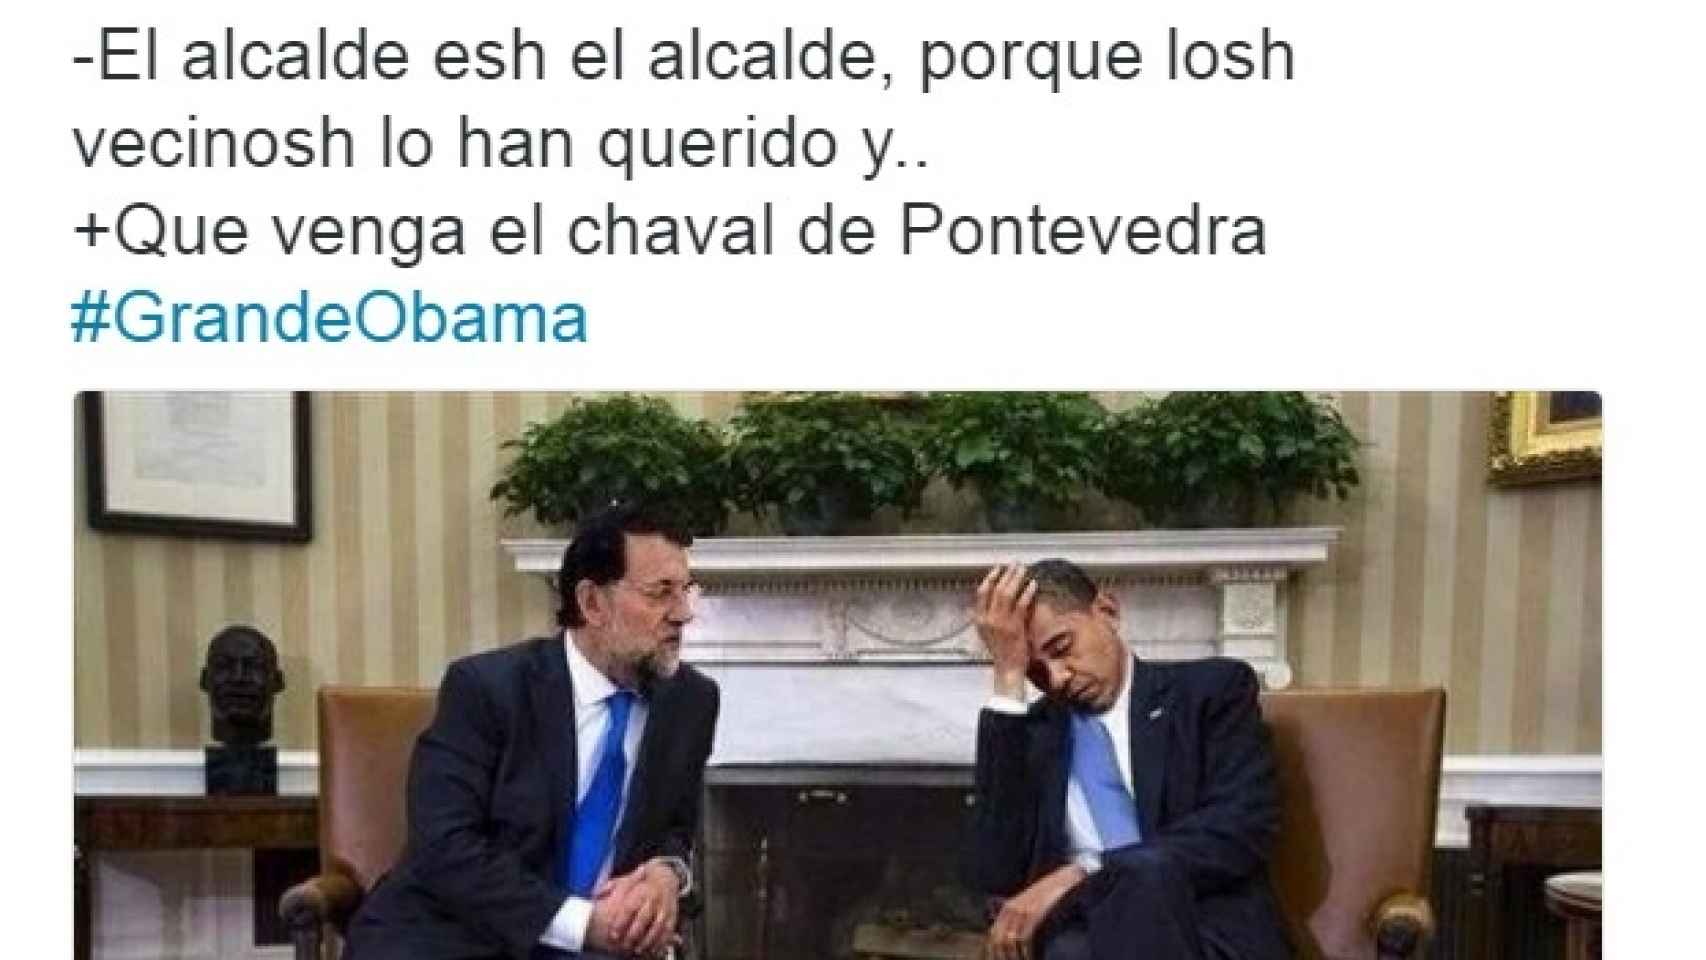 Barack_Obama-Estados_Unidos-Politica-Geopolitica-Espana-Social_138997679_9465648_1706x960.jpg